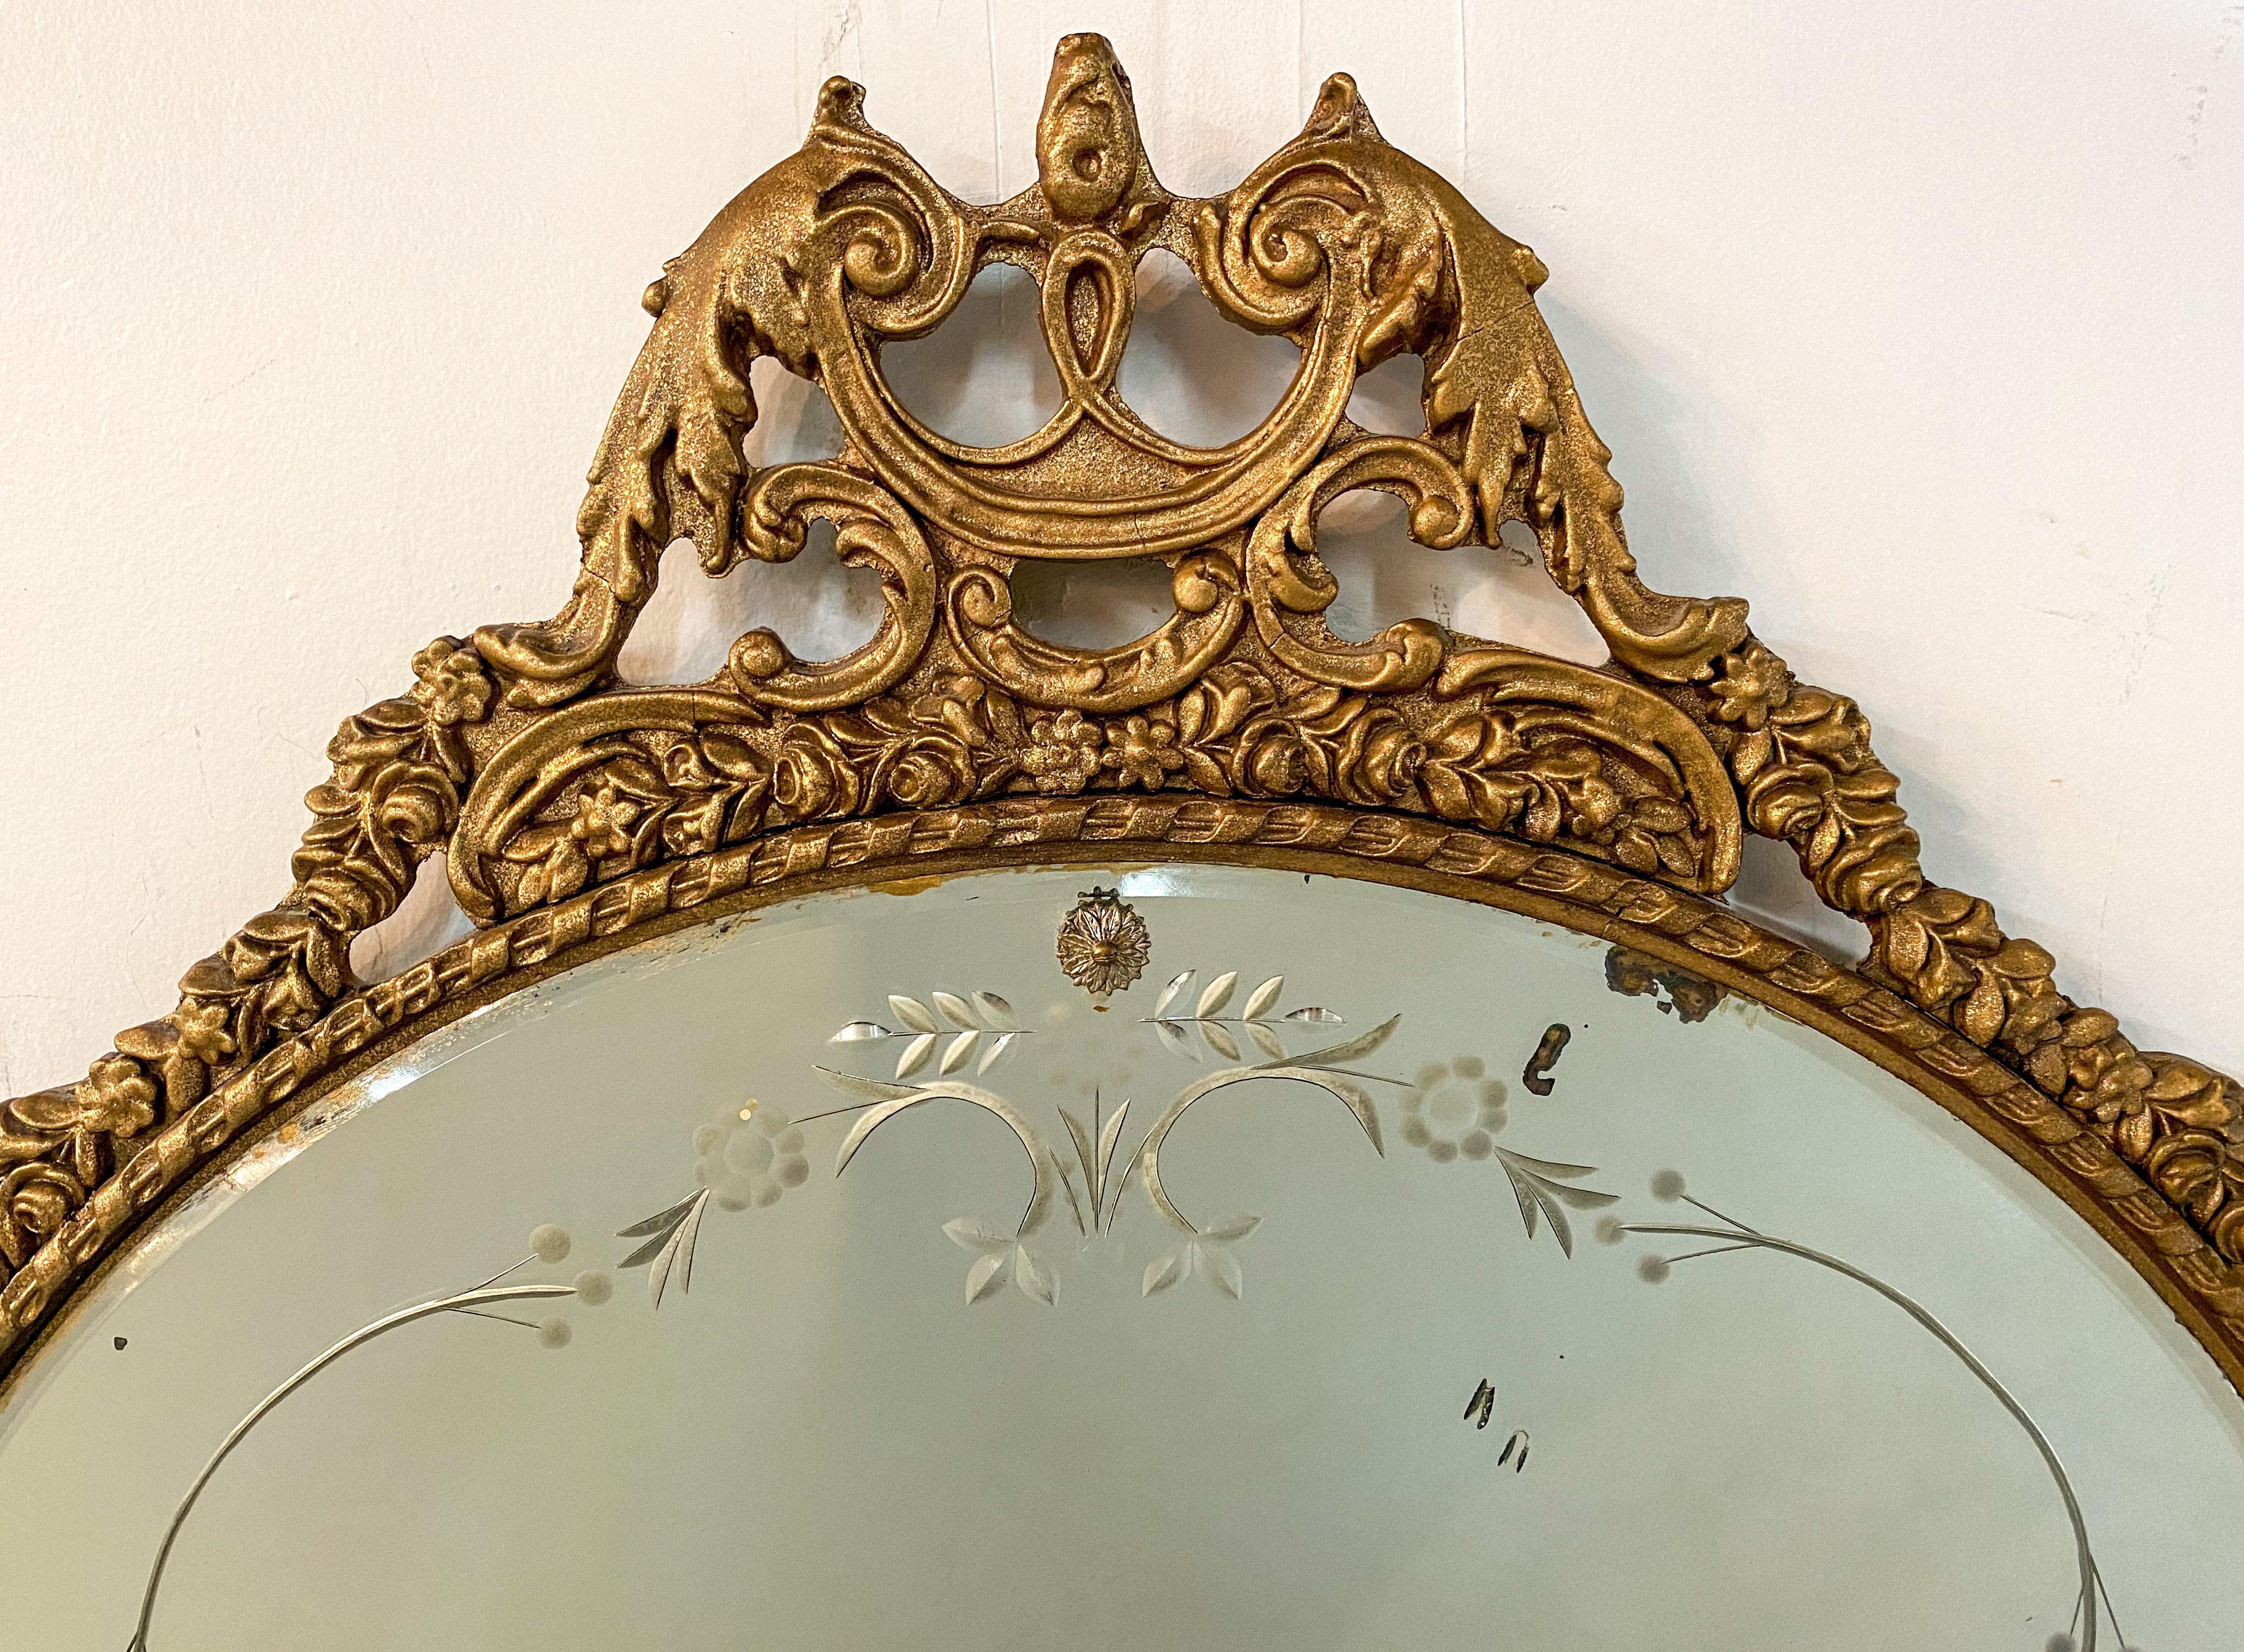 Ein runder französischer Spiegel im neoklassizistischen Stil des 19. Jahrhunderts. Der atemberaubende Spiegel ist wunderschön vergoldet und zeigt feine und elegante handgeschnitzte Details von Blumen- und Schneckenmustern. Der Glasspiegel ist mit